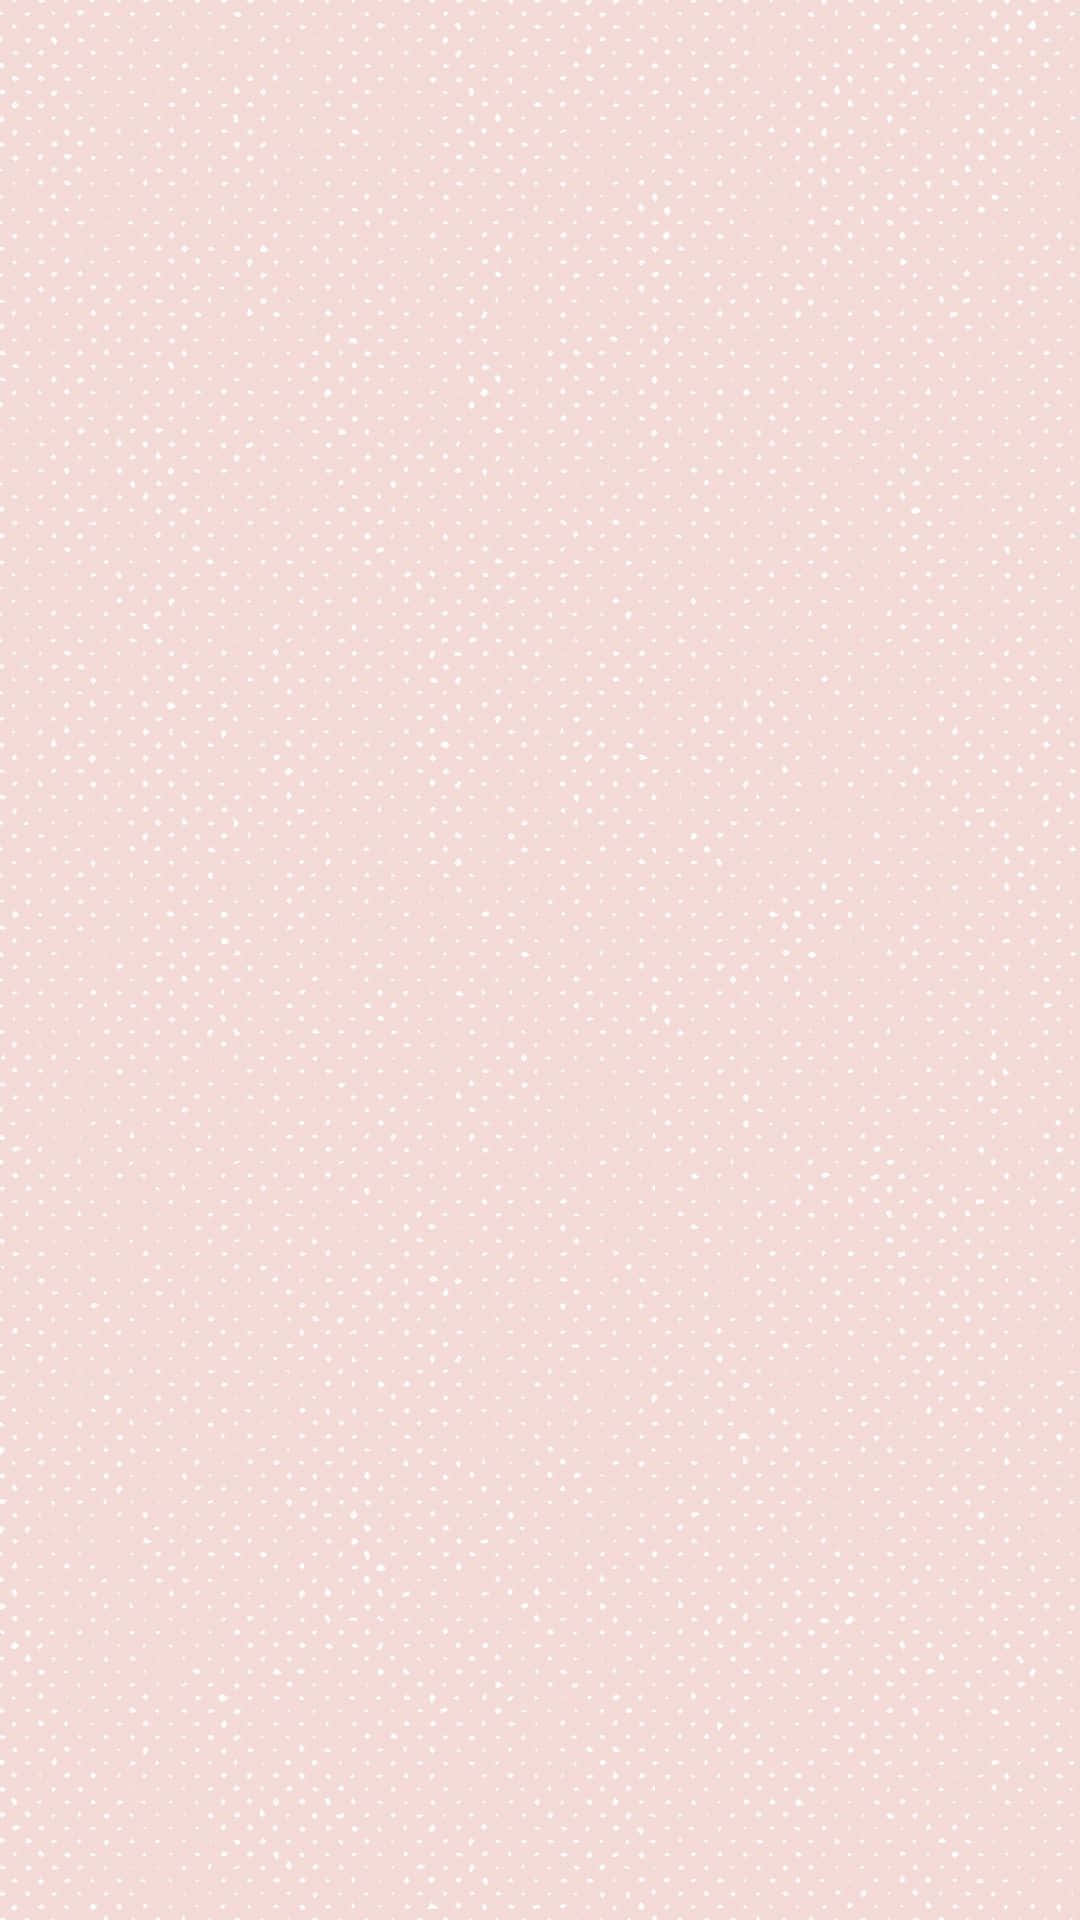 Holdir Aufmerksamkeit Mit Dem Stylischen Light Pink Iphone Wallpaper